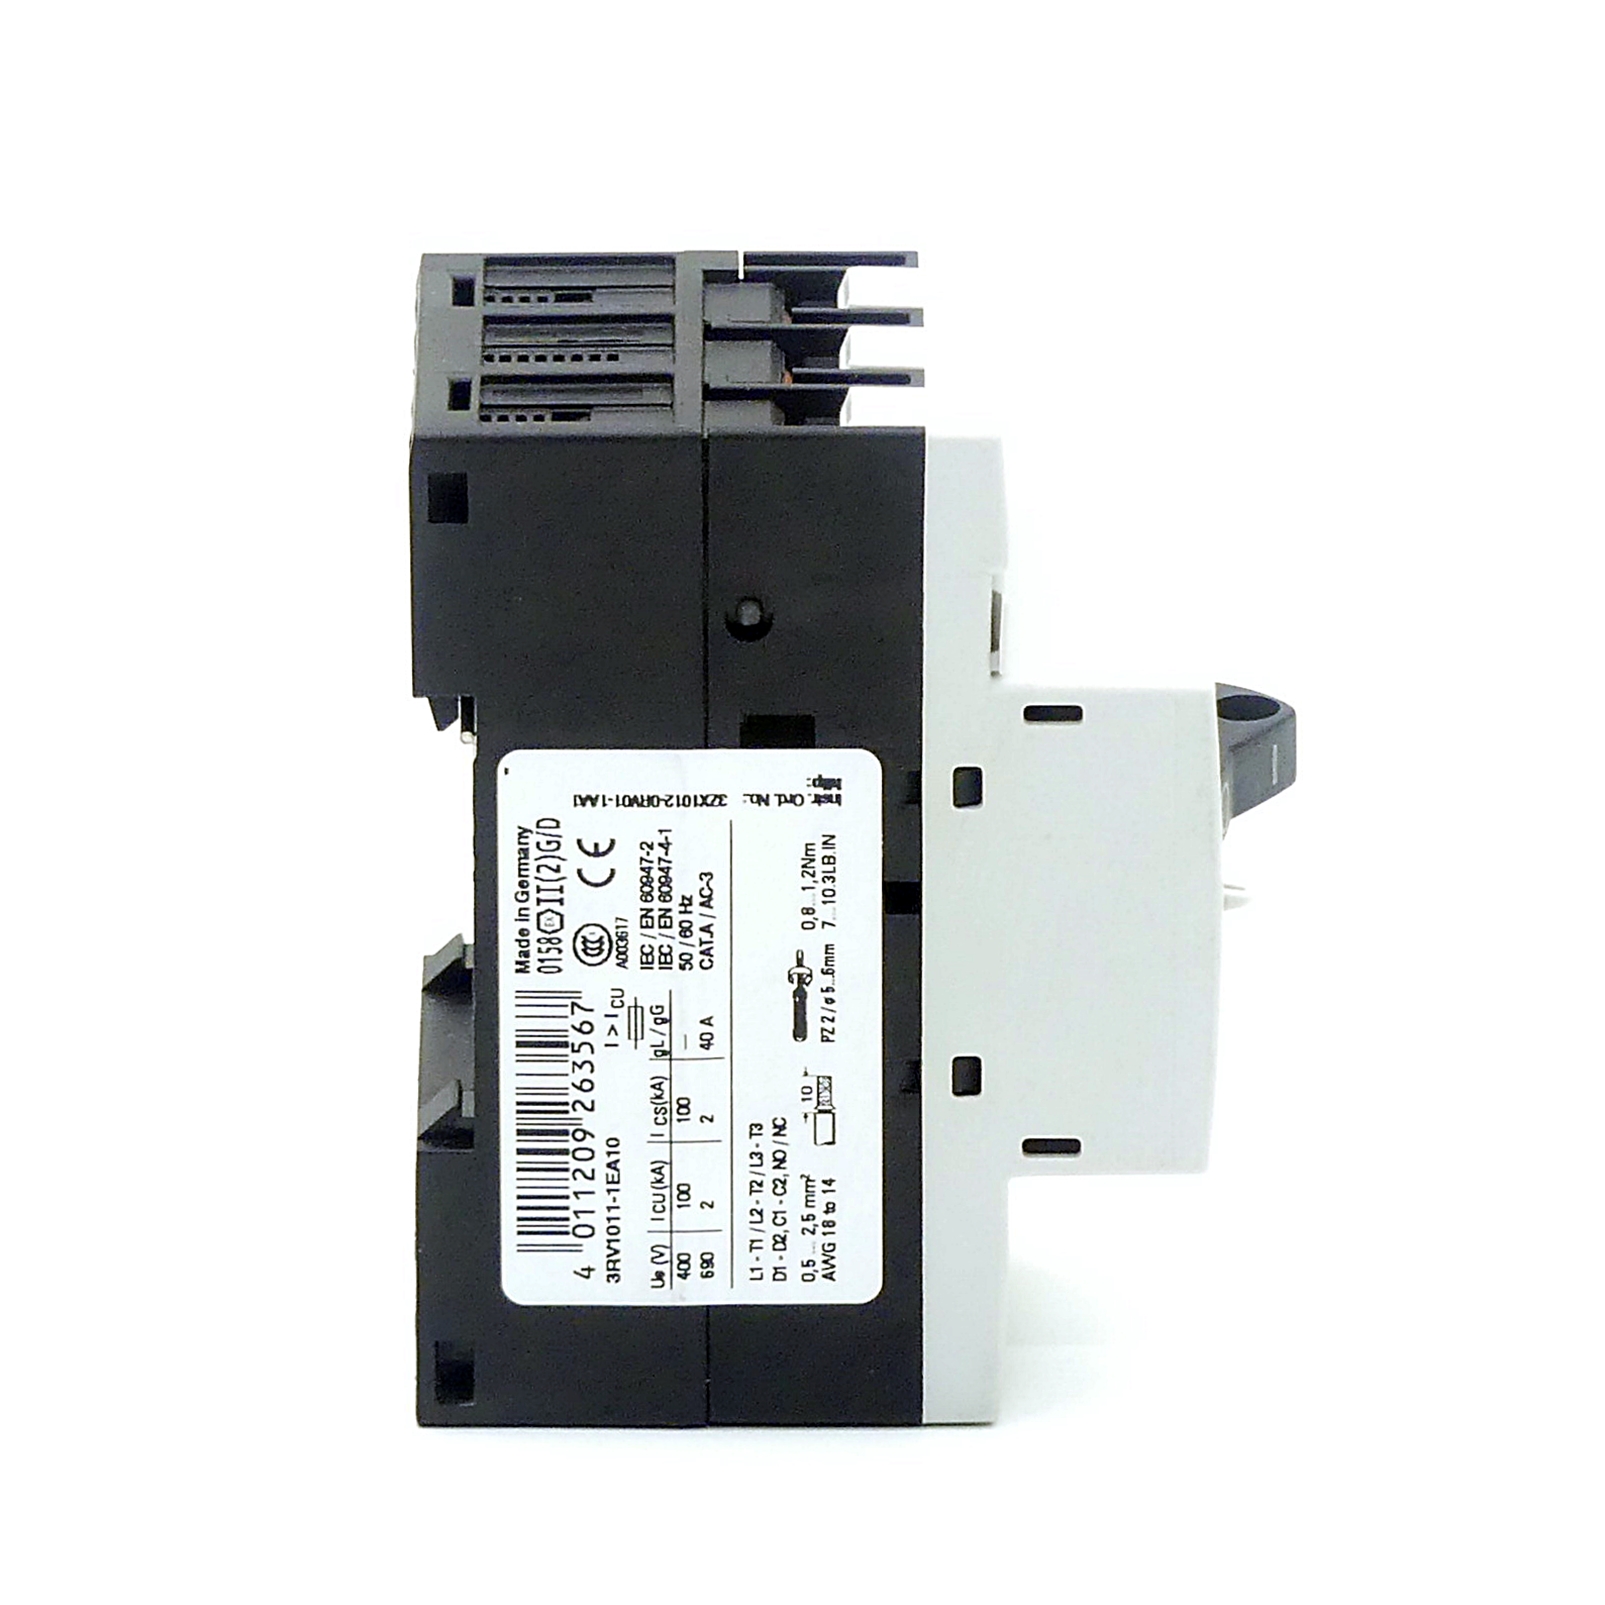 Leistungsschalter 3RV1011-1EA10 